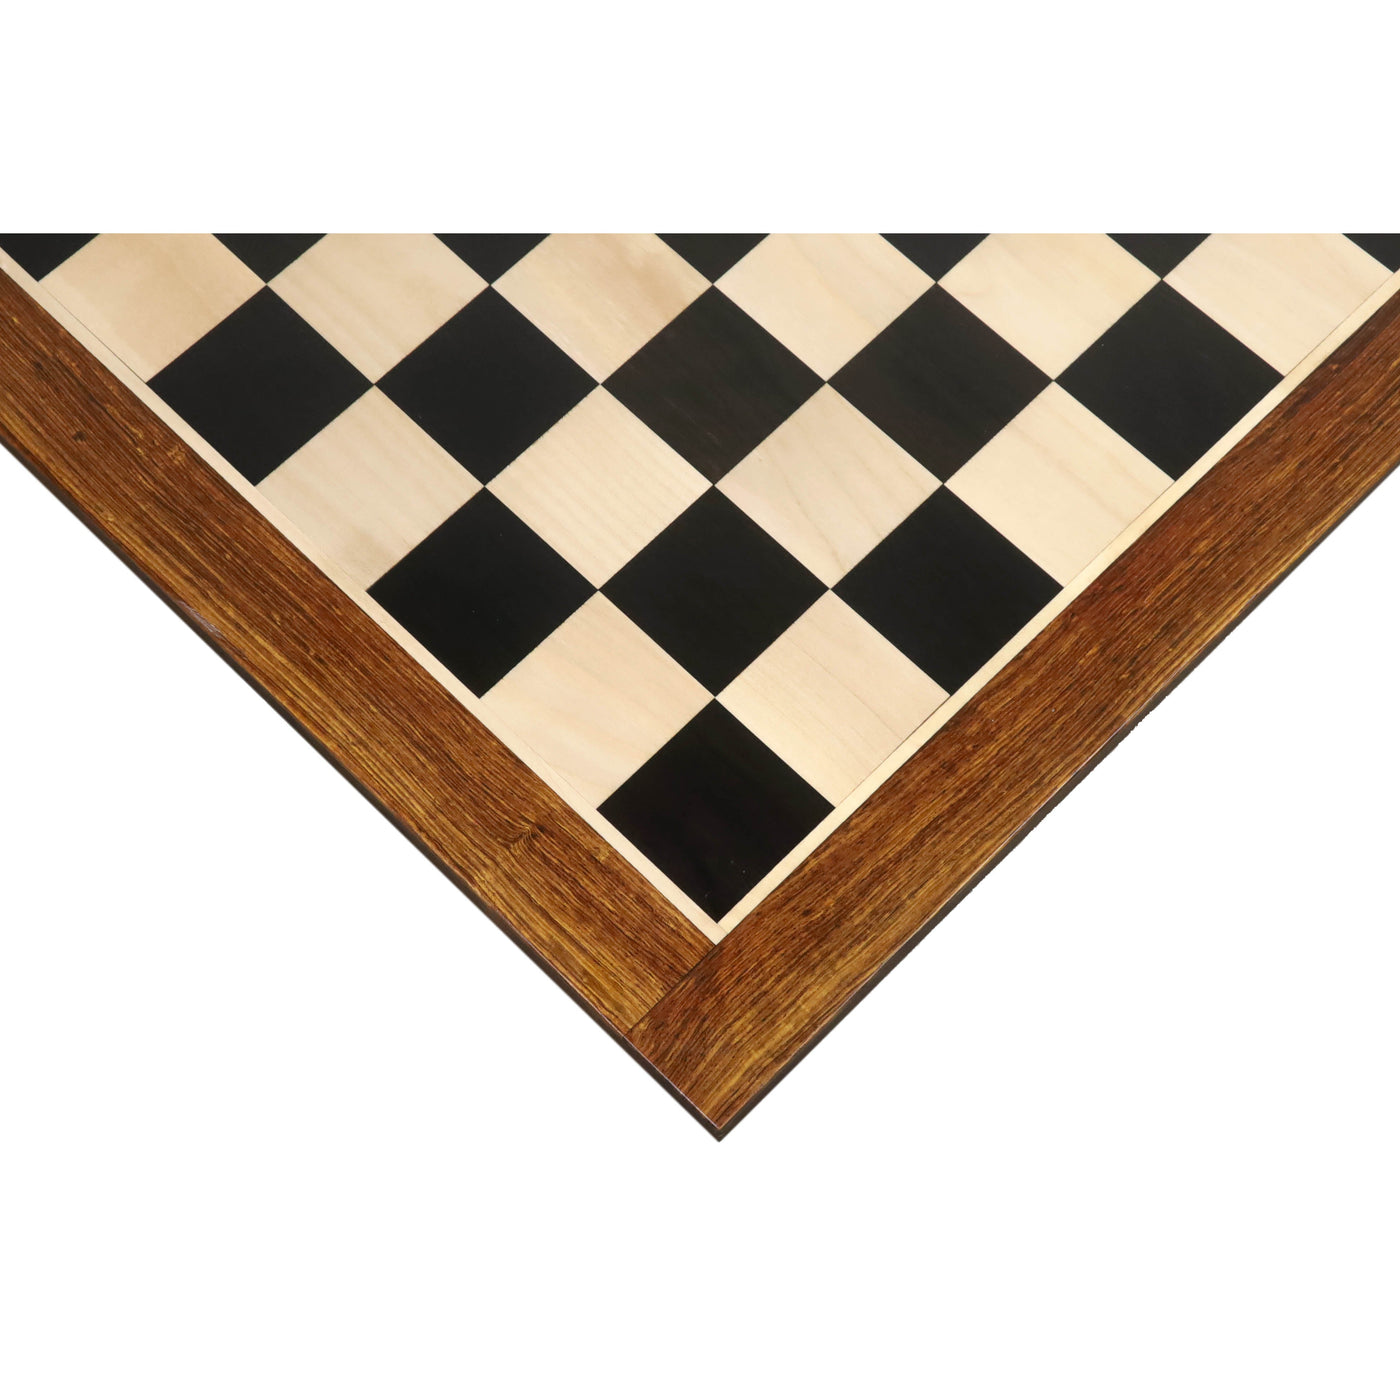 Slightly Imperfect 23" Large Ebony & Maple Wood Chessboard